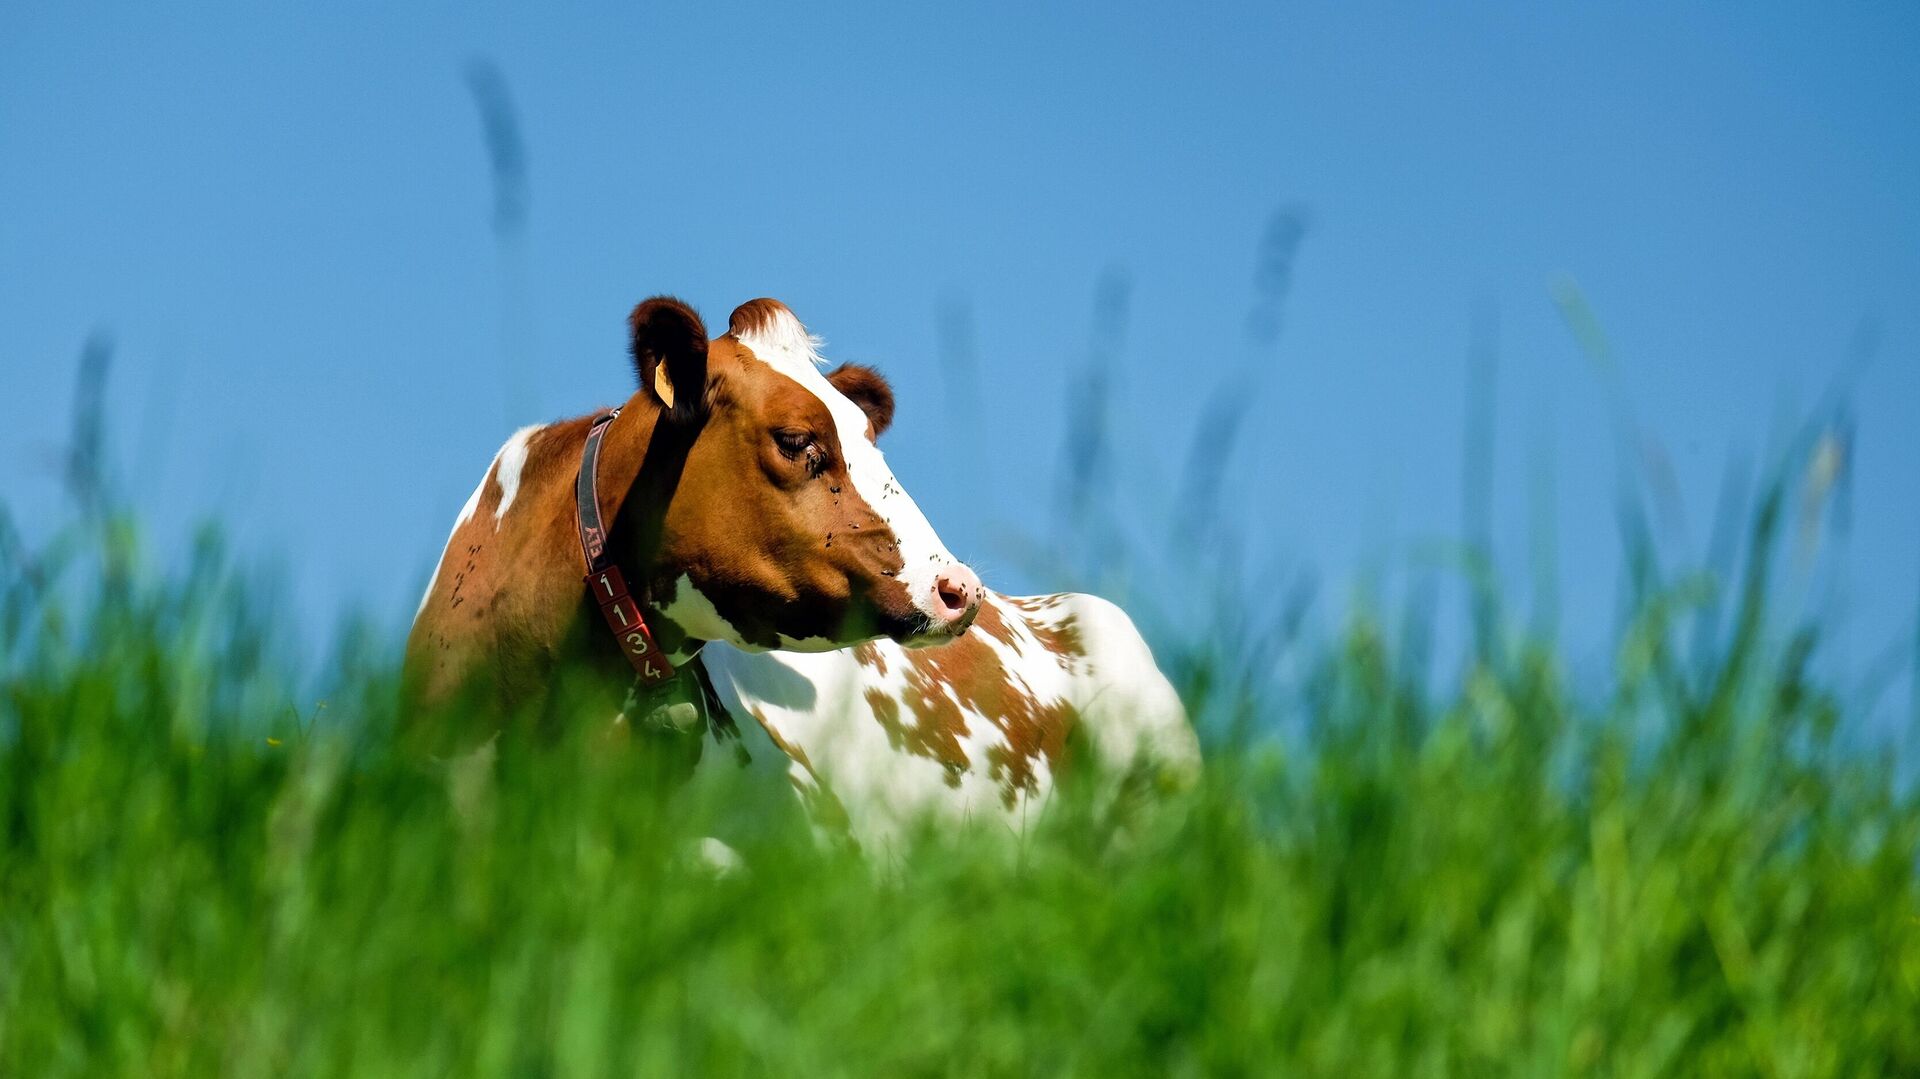 Учёные выросли супер - корова: дает в 20 раз больше молока и устойчива к жаре и болезням